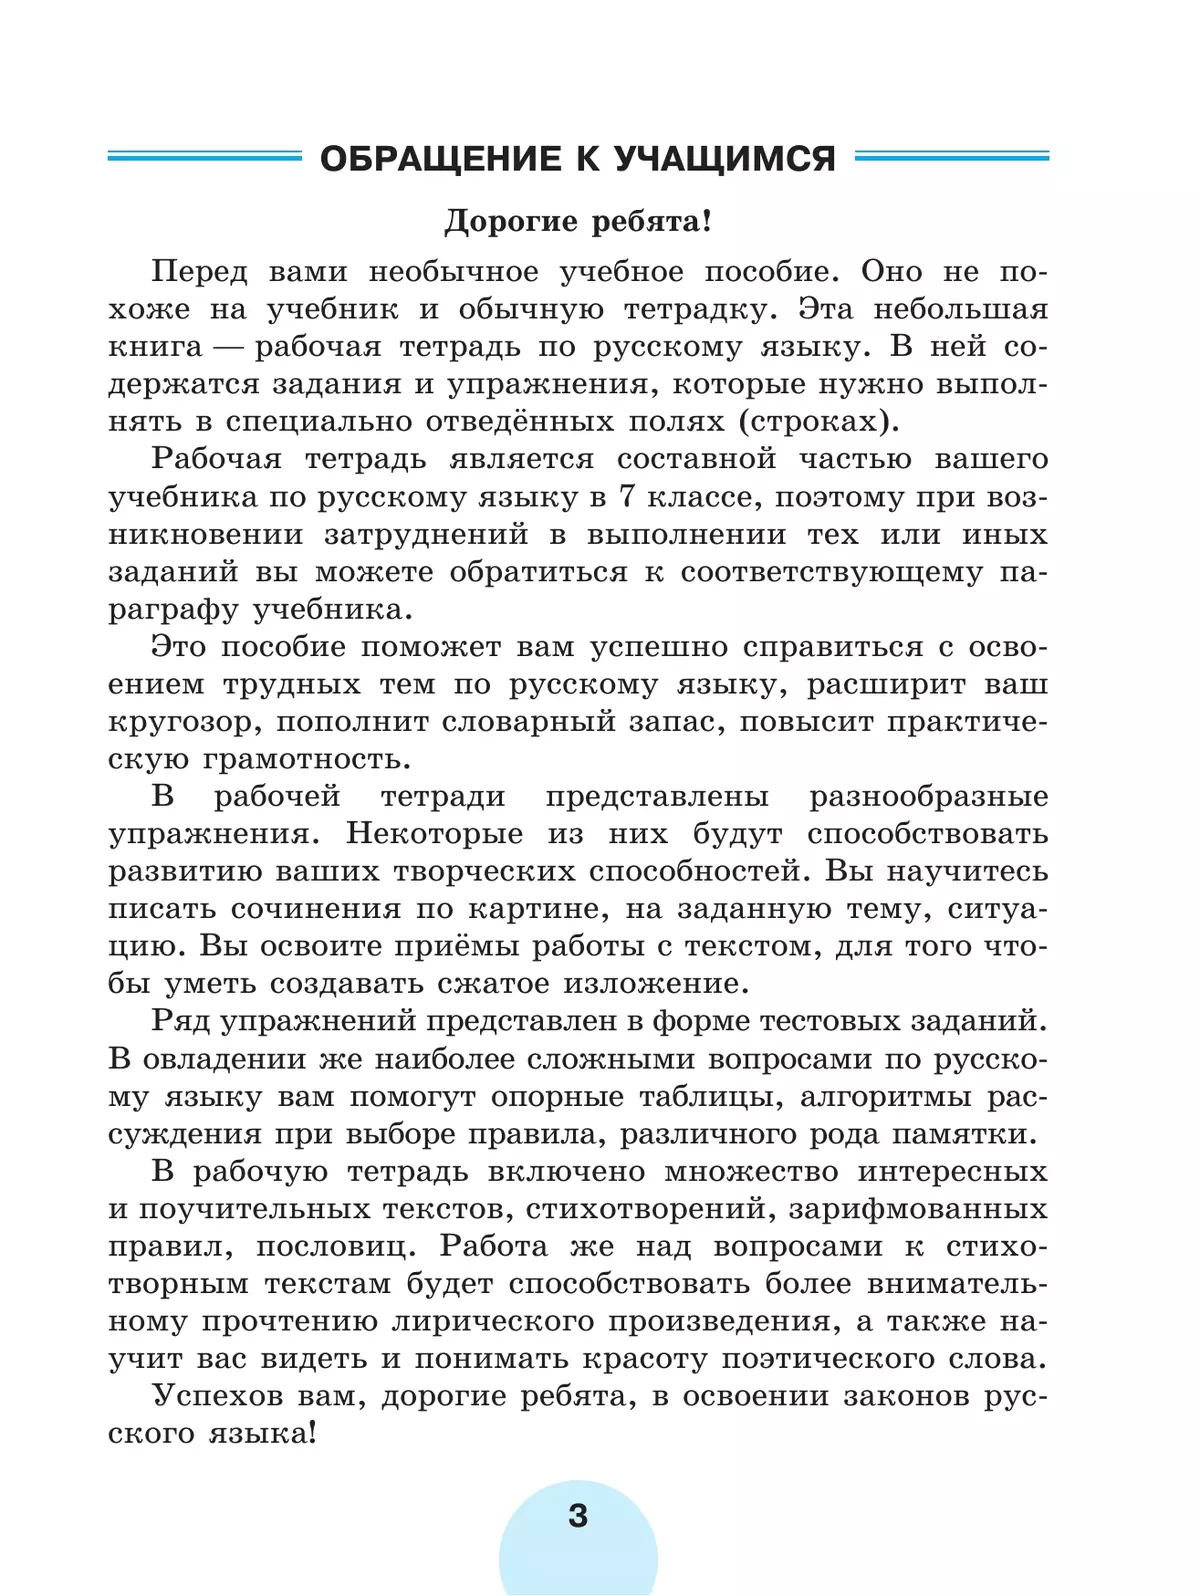 Русский язык. Рабочая тетрадь. 7 класс. В 2 ч. Часть 1 2